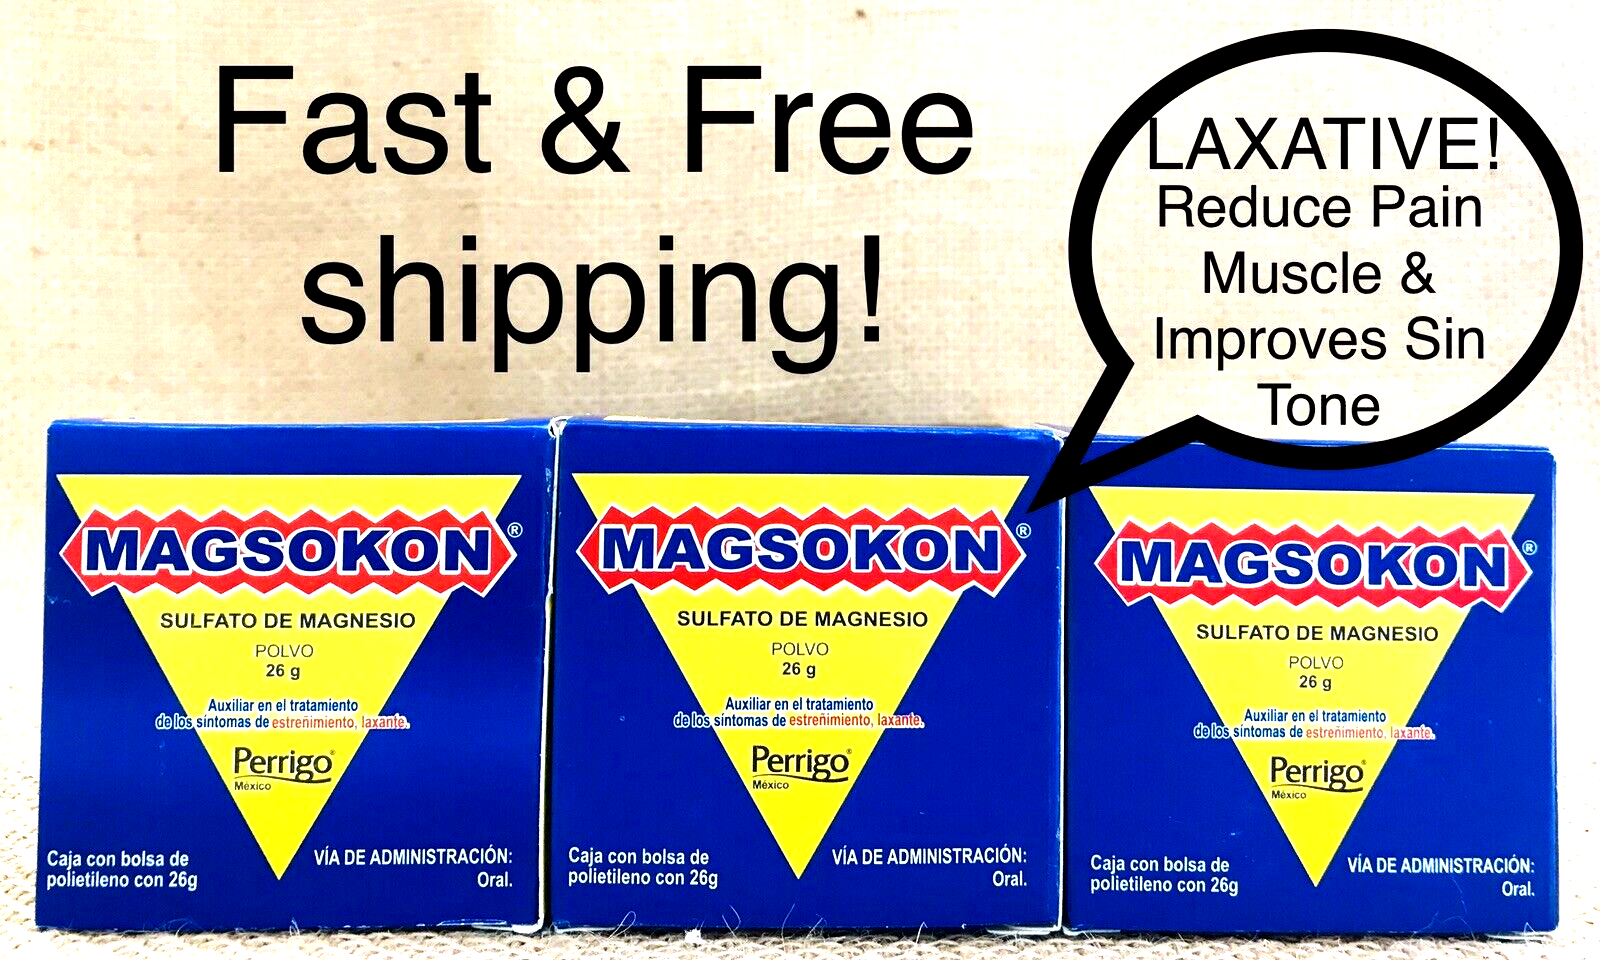 3 MAGSOKON  SULFATO DE MAGNESIO  26g / Magnesium Sulfate / Laxante Salino  MAGSOKON 7501109763986